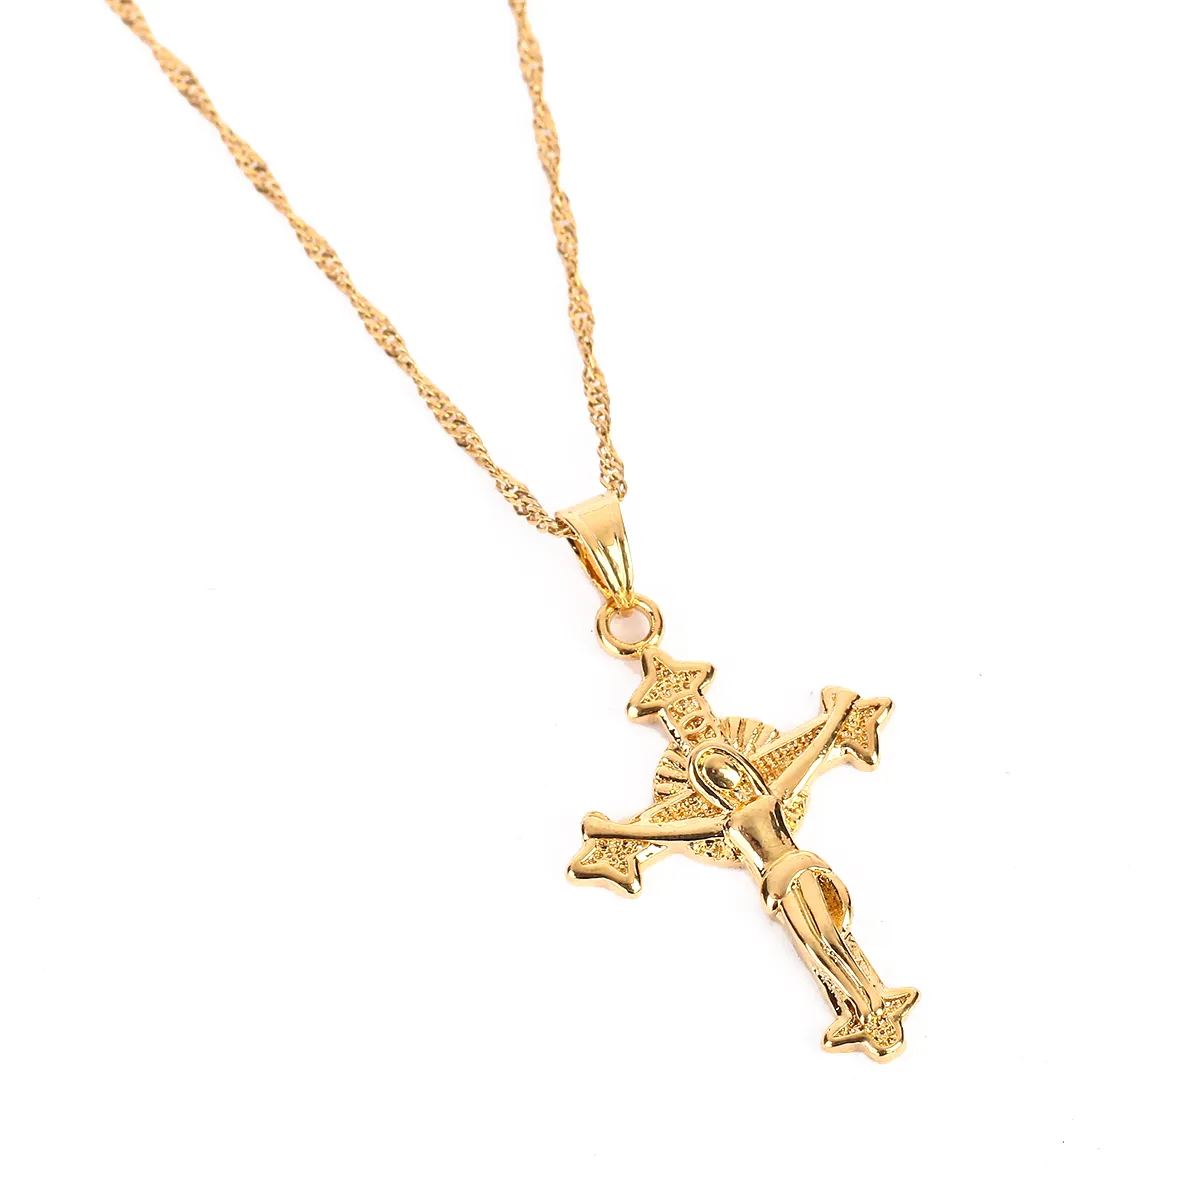 Alta qualità Gesù testa croce collane oro colore 22K pendente di fascino per le donne uomini fabbrica di gioielli all'ingrosso gioiello crocifisso dio